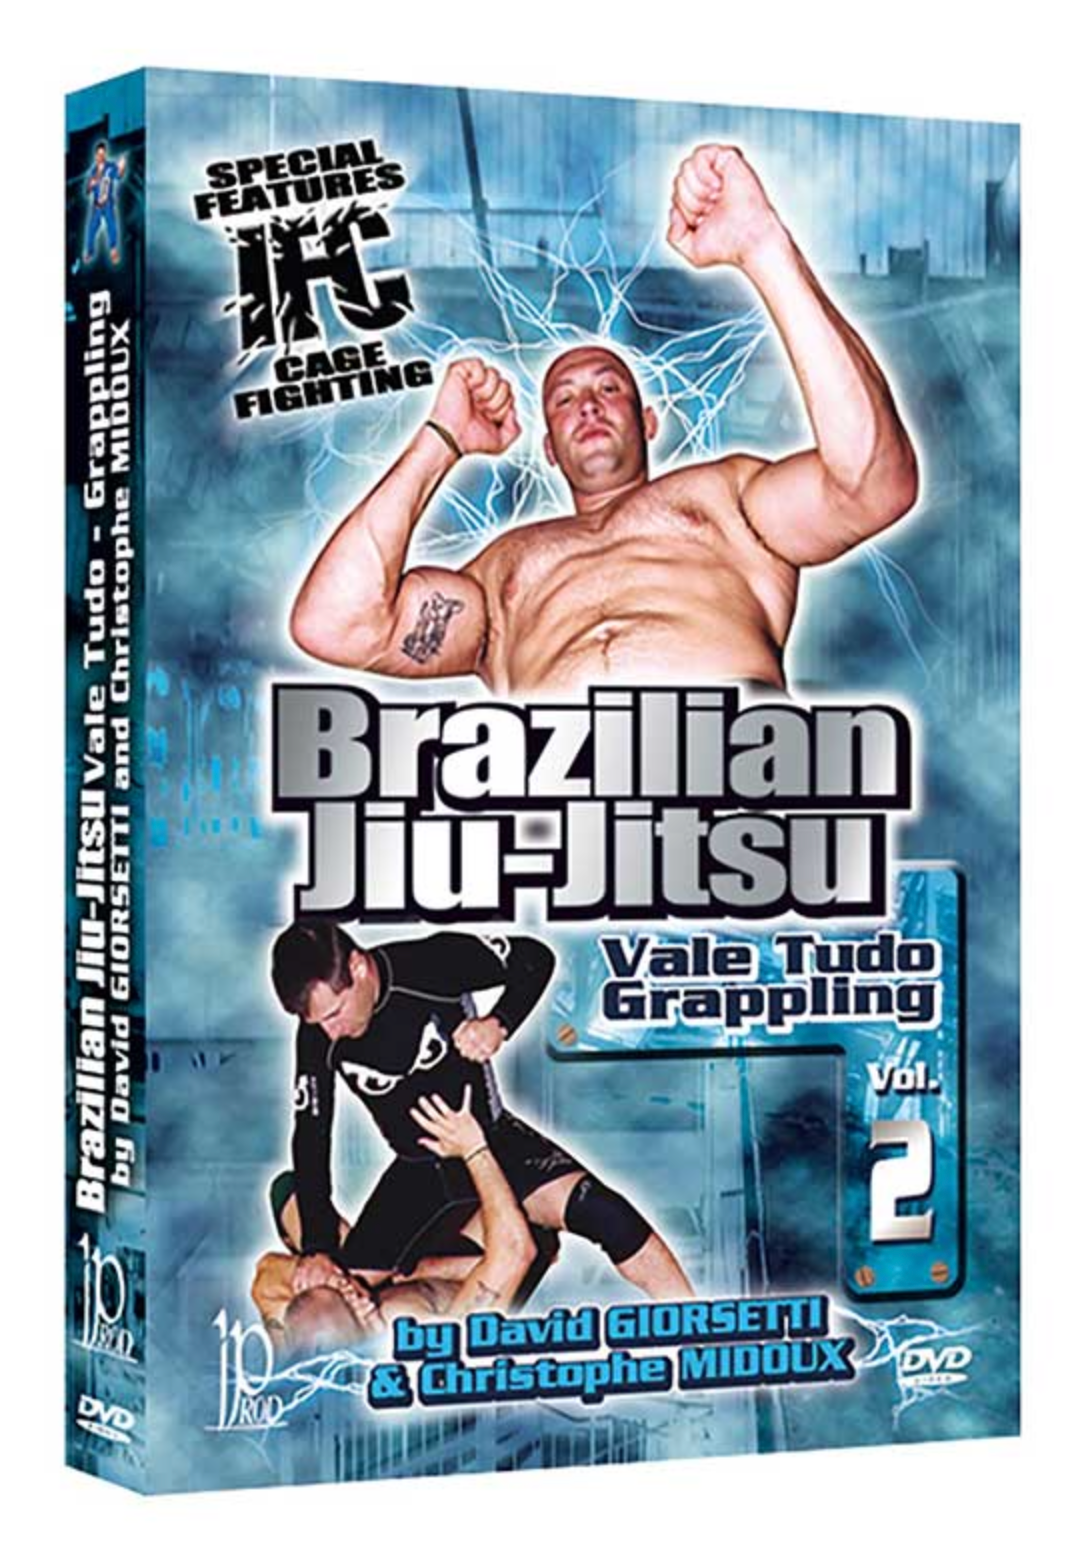 ブラジリアン柔術ヴァーリトゥード グラップリング DVD 2 デビッド ジョセッティ & クリストフ ミドゥ